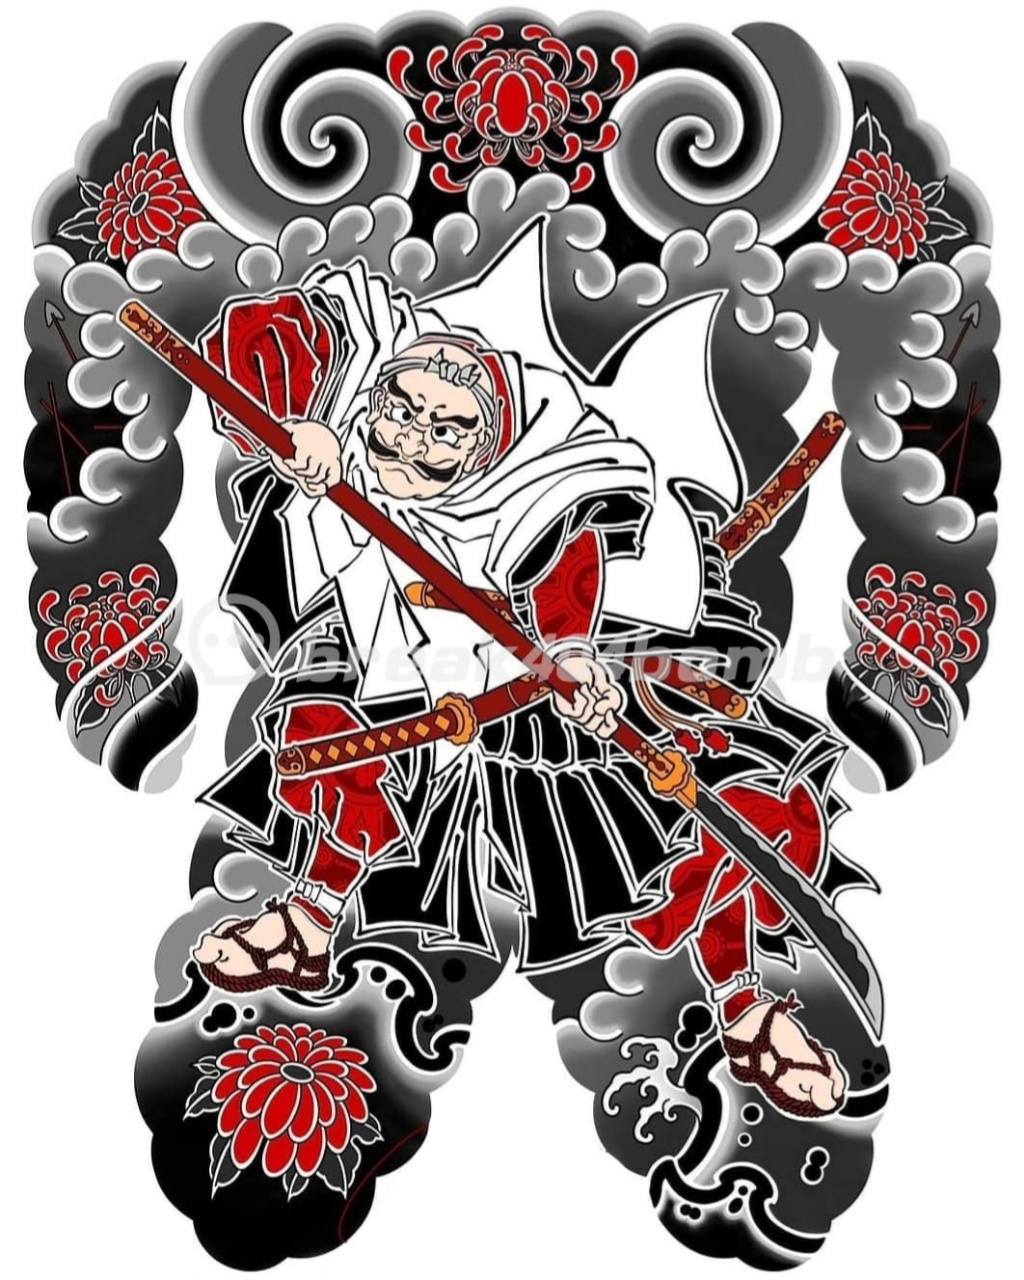 满背武士纹身丨日式满背纹身手稿 日本武士,是源于日本的一种独特文化